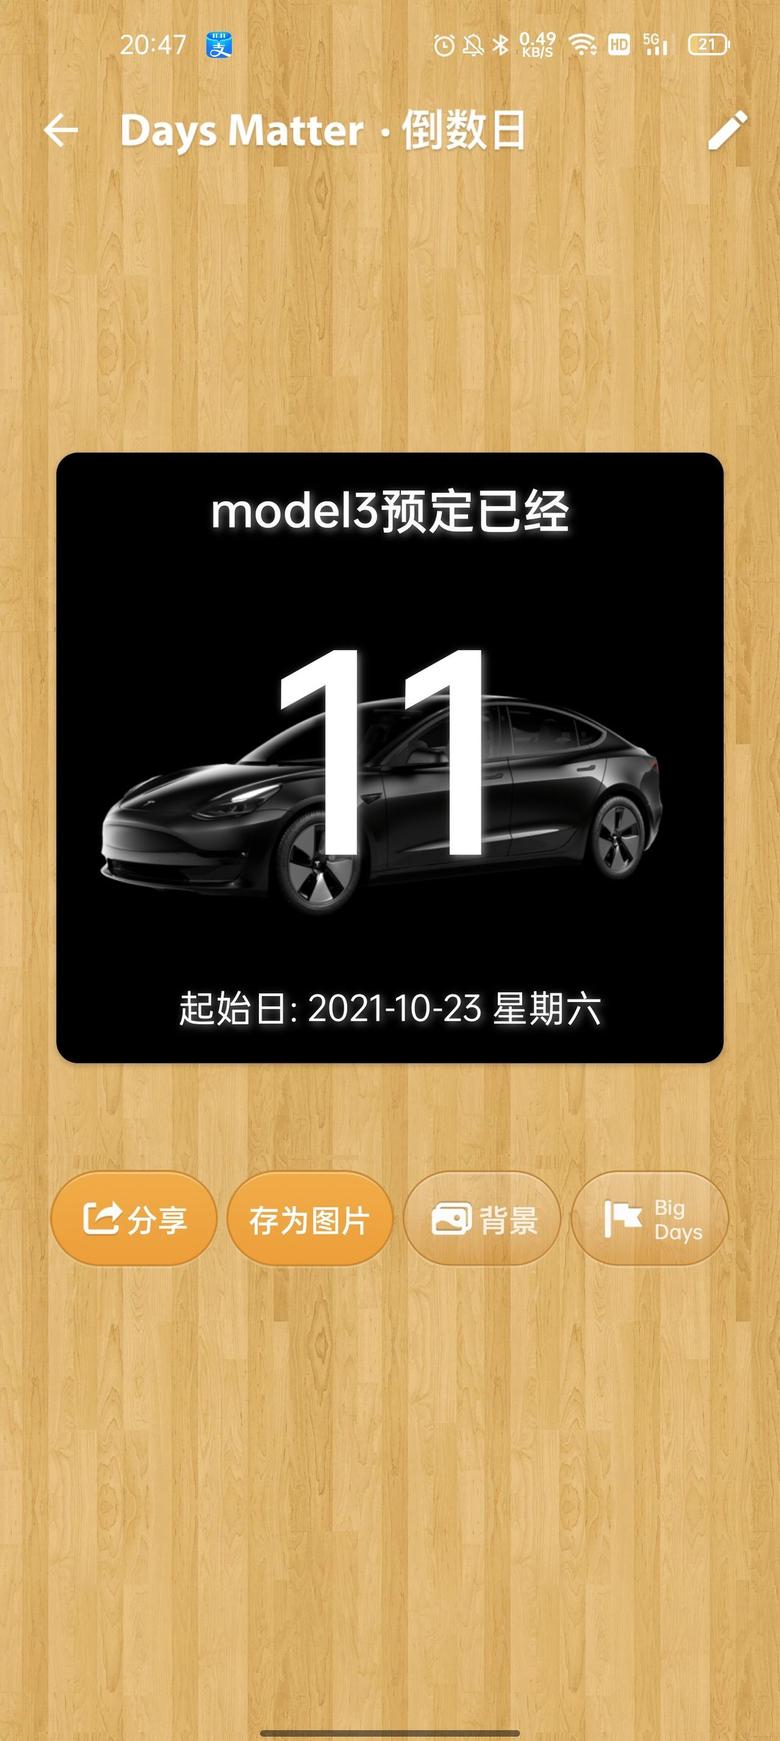 model 3 今天开始写一写下定特斯拉model3的心路历程包括试驾的各种同等级新能源的车的各种比较说一说